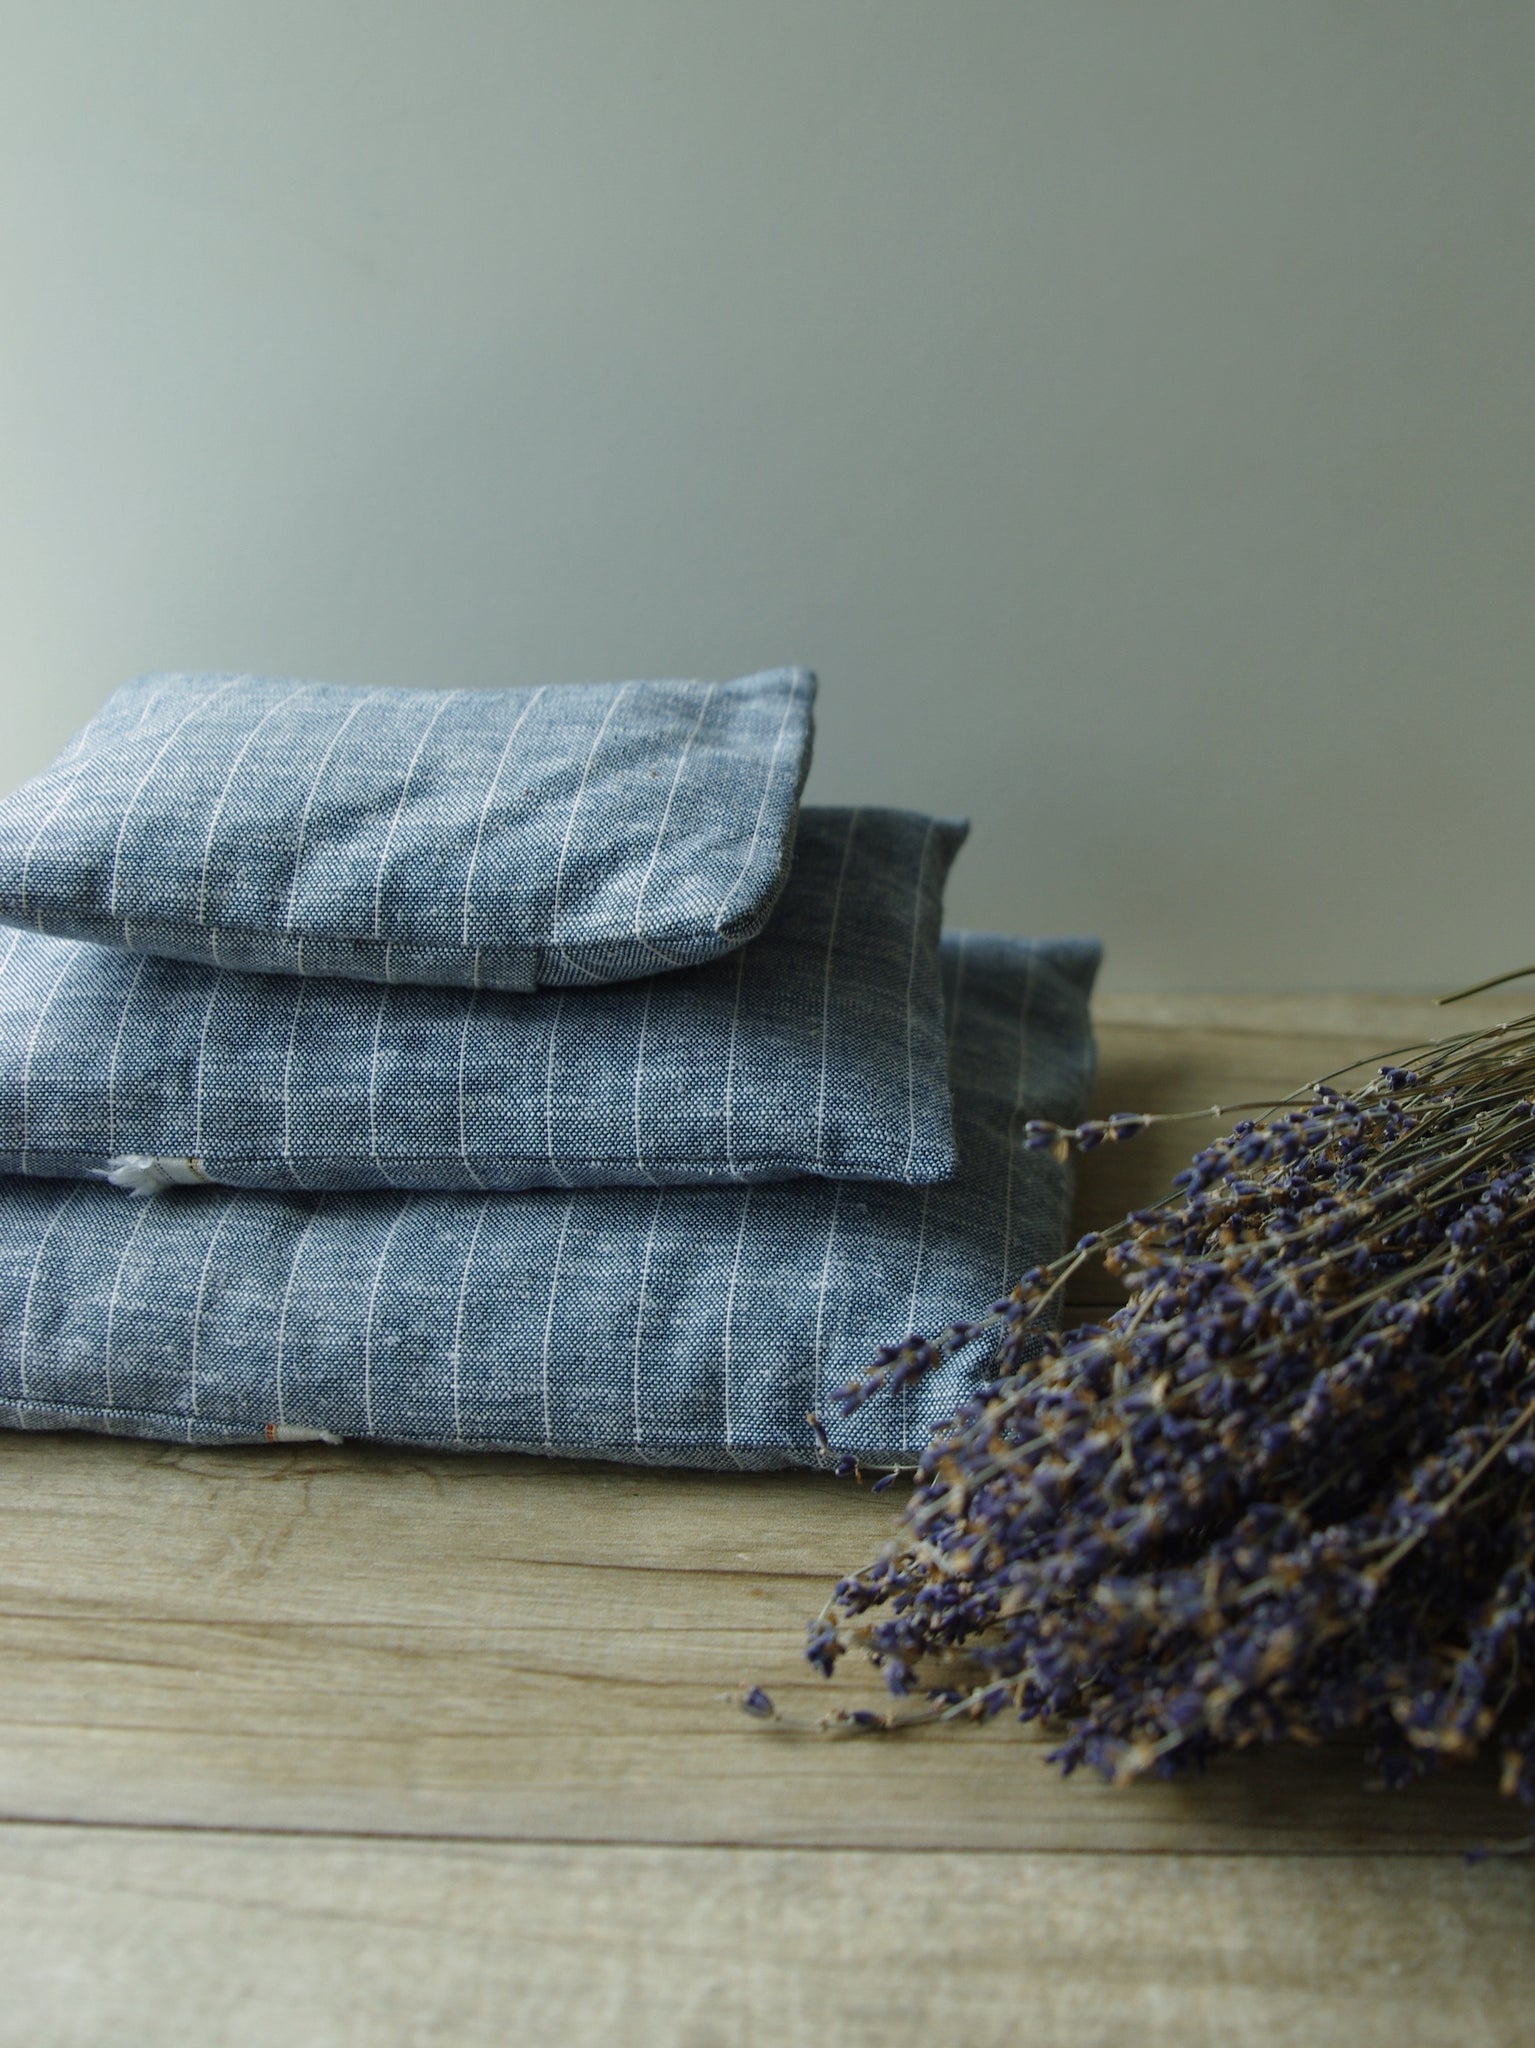 French Lavender Sachet—Blue Striped Linen